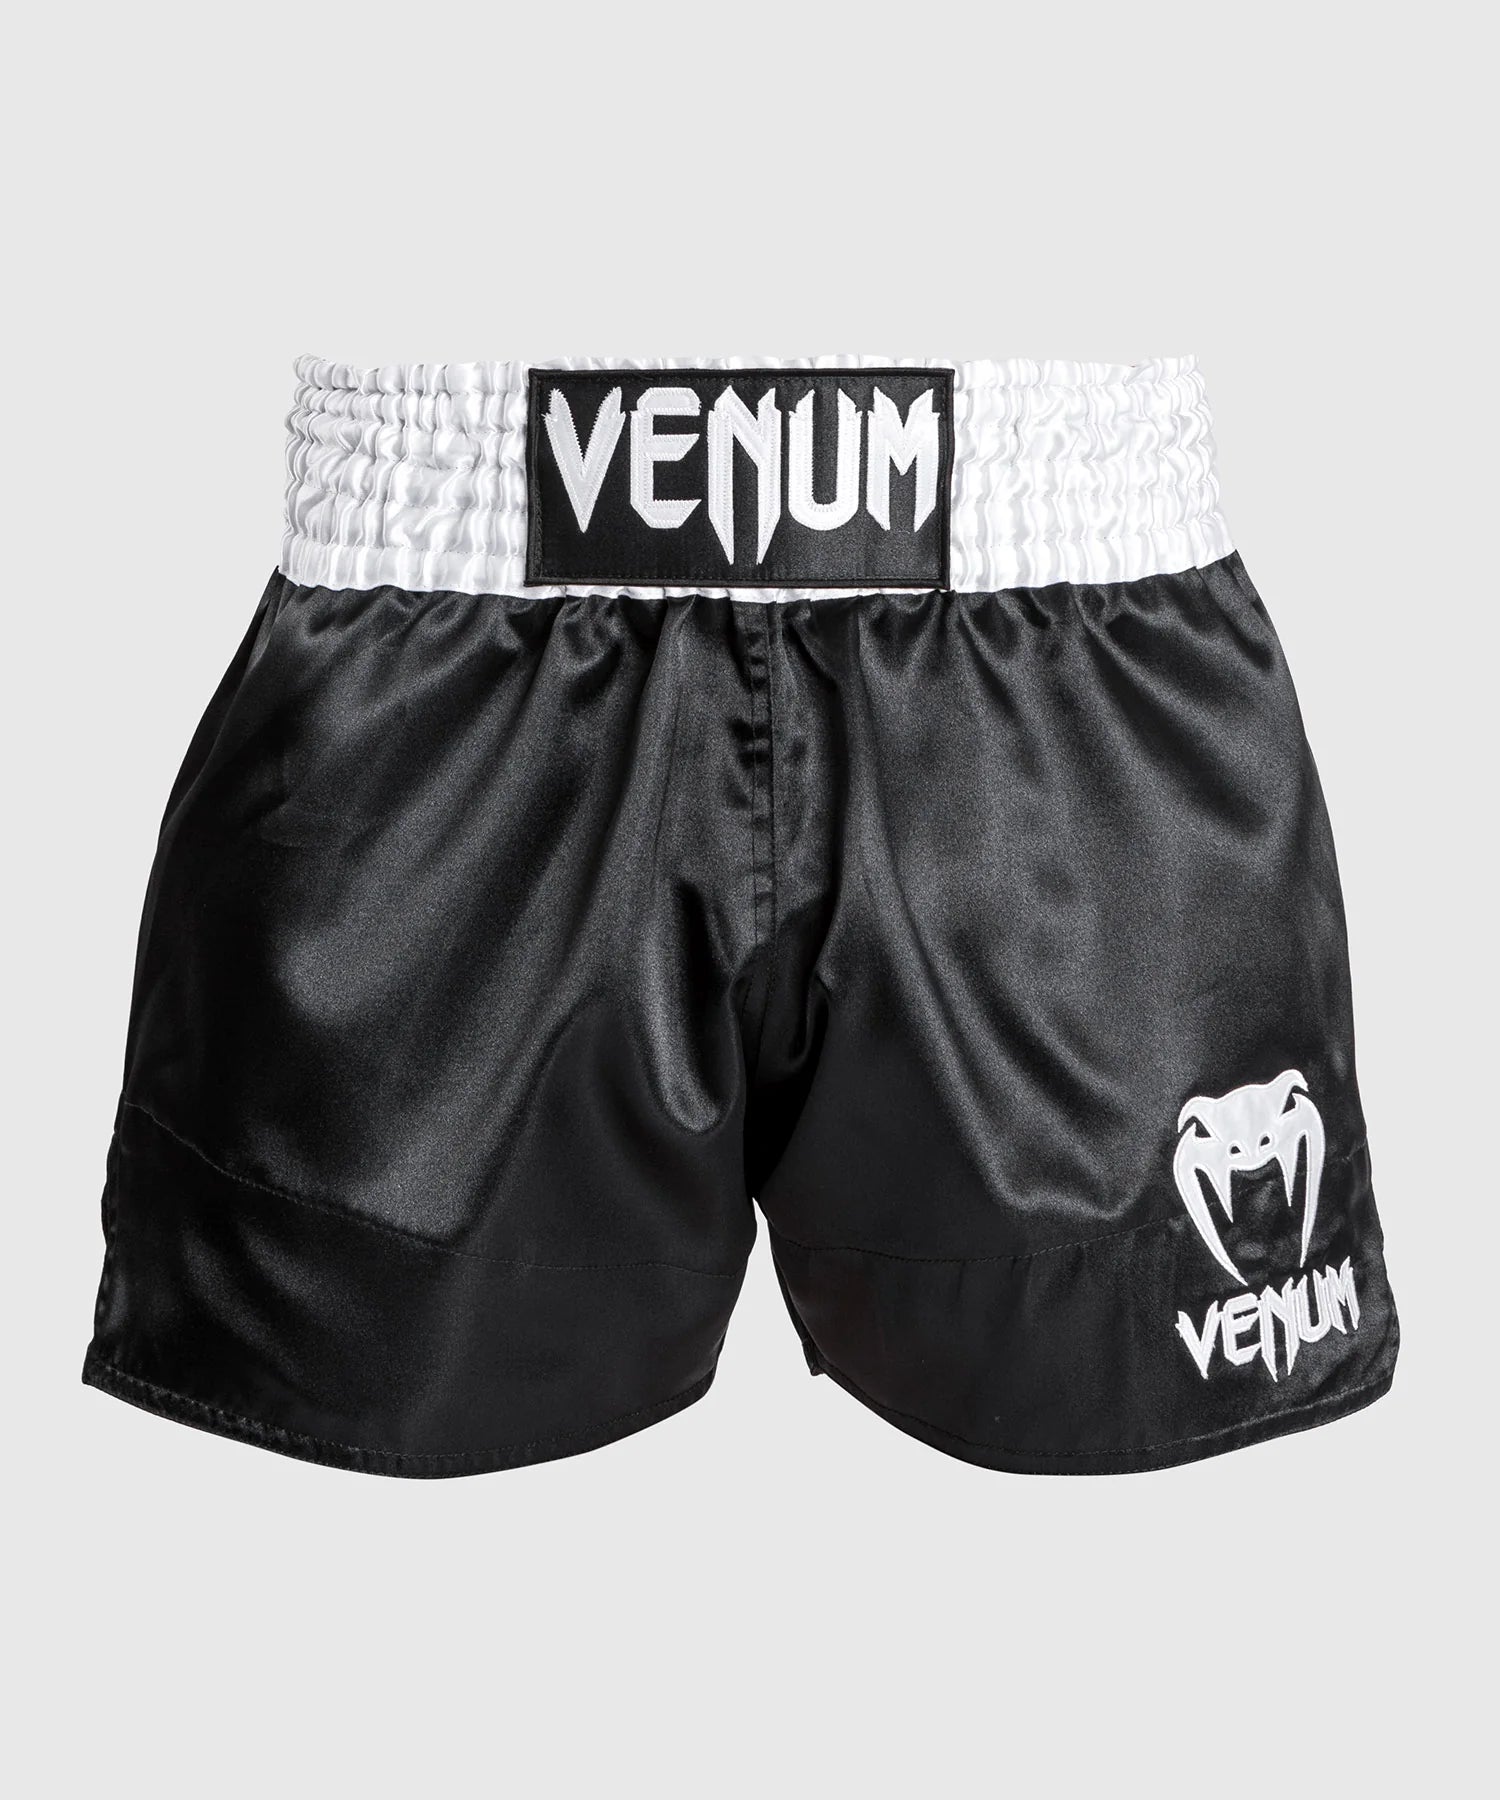 Muay Thai Short Classic - Venum